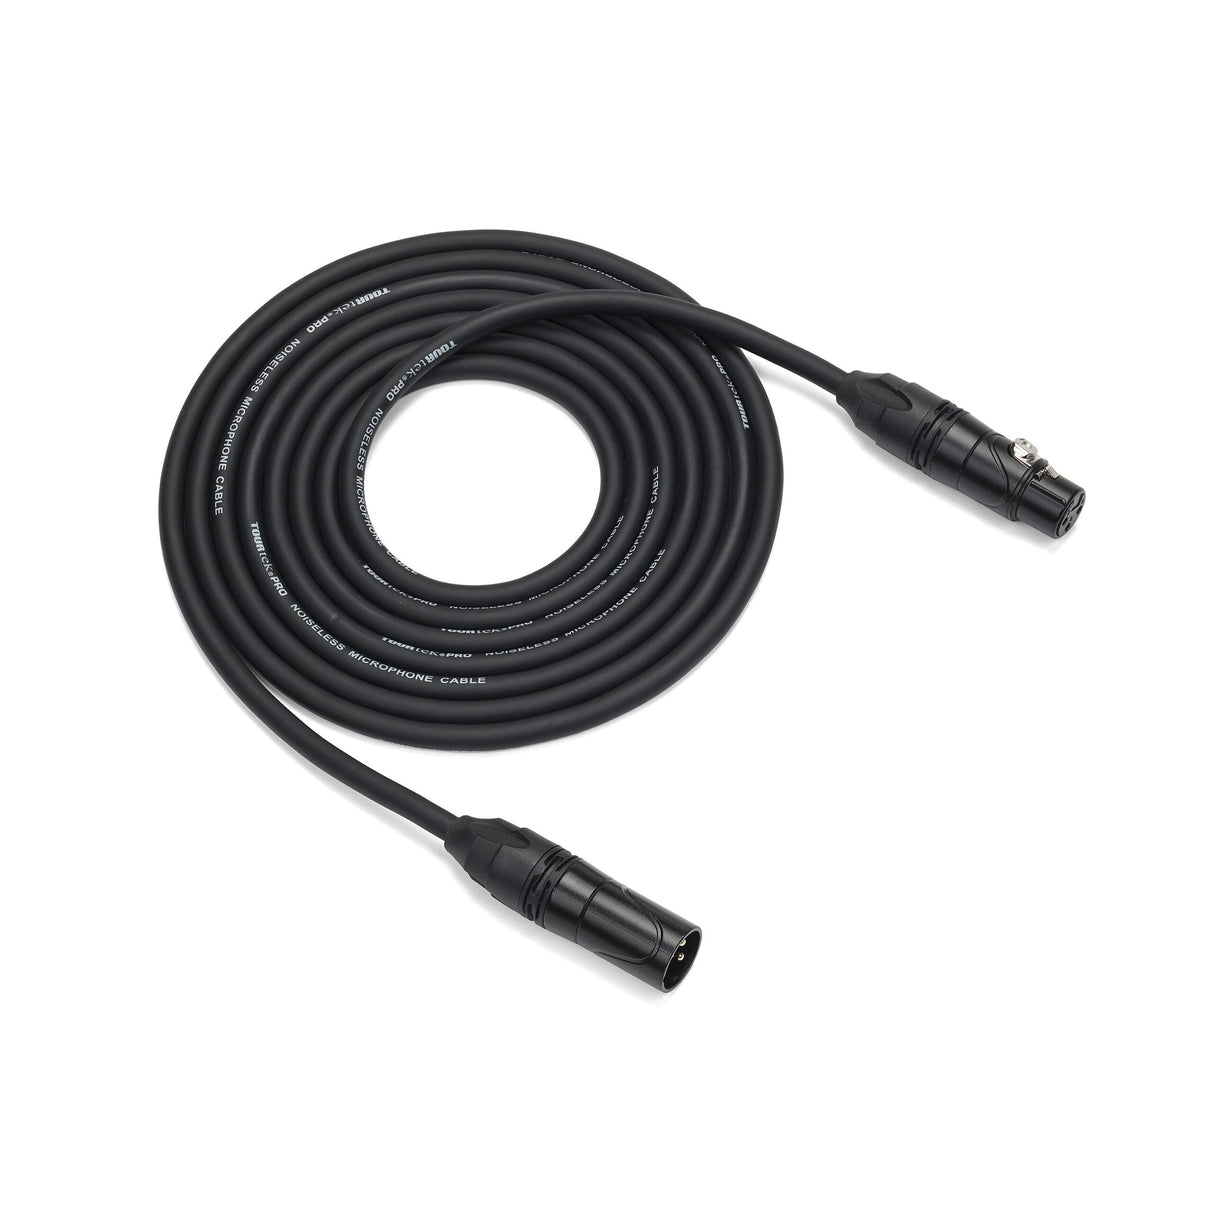 Samson Tourtek Pro TPM Microphone Cable, 10 Foot